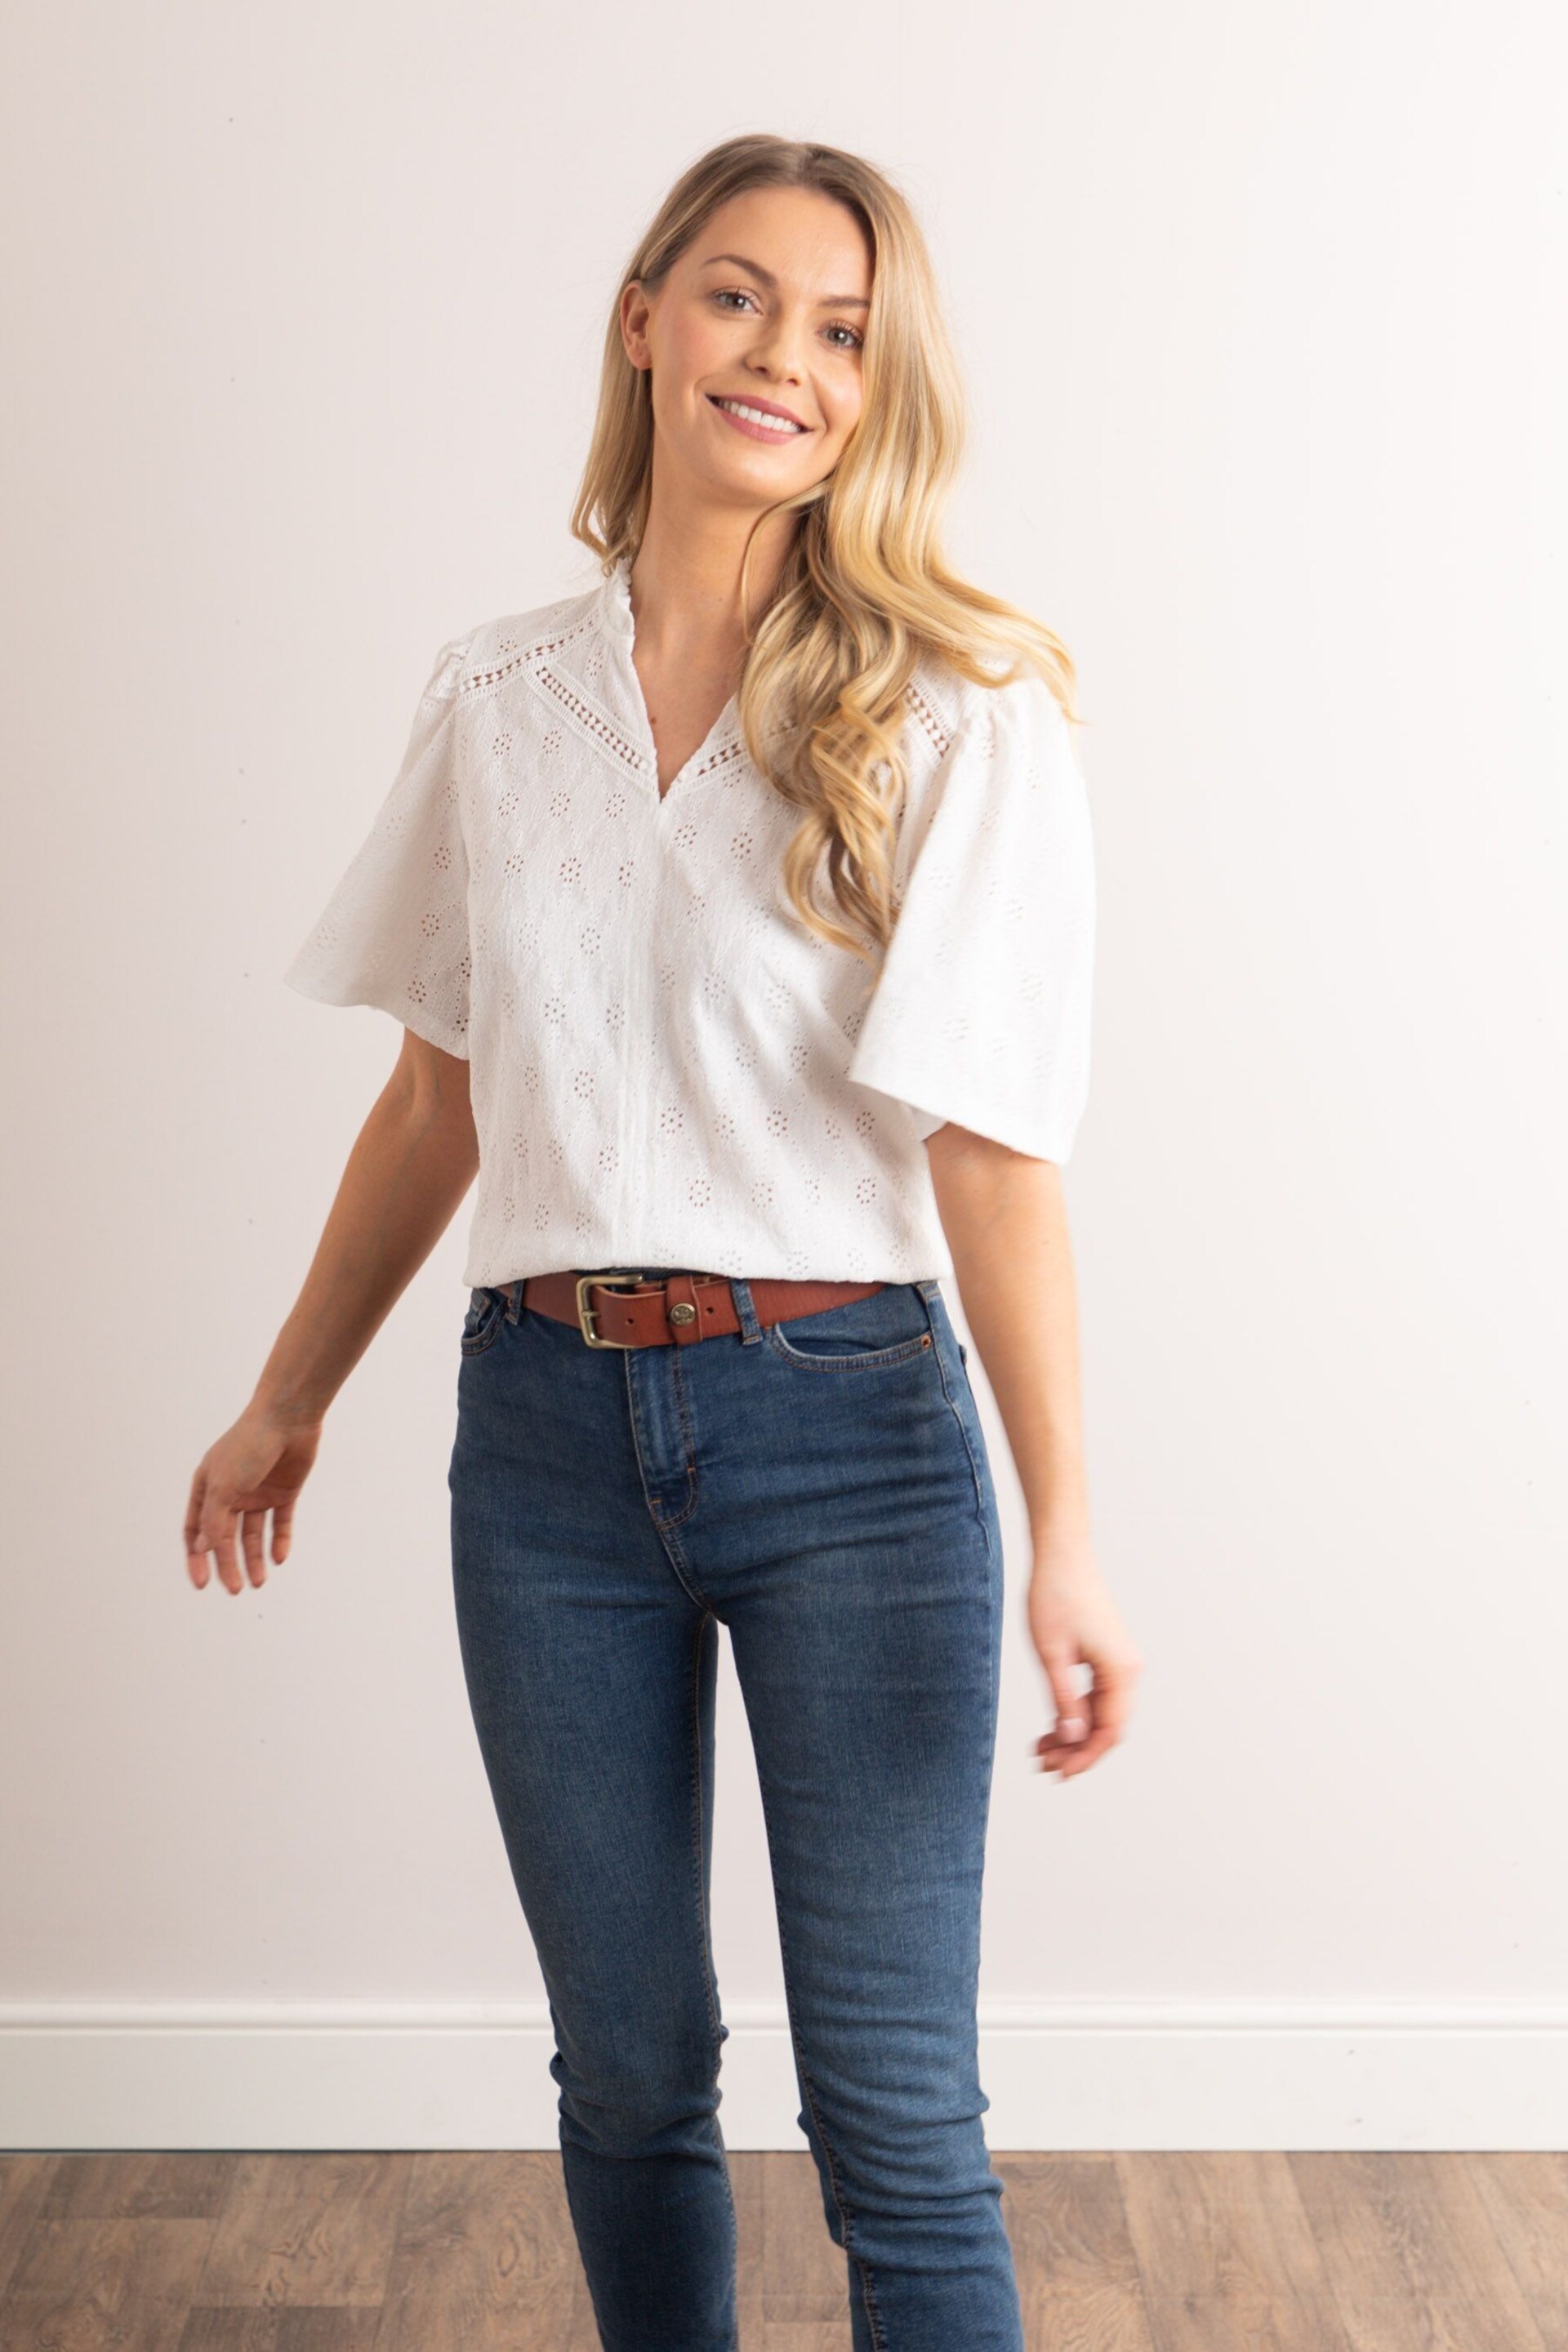 Lakeland Clothing Sasha Pointelle Short Sleeve White Blouse - Image 6 of 6